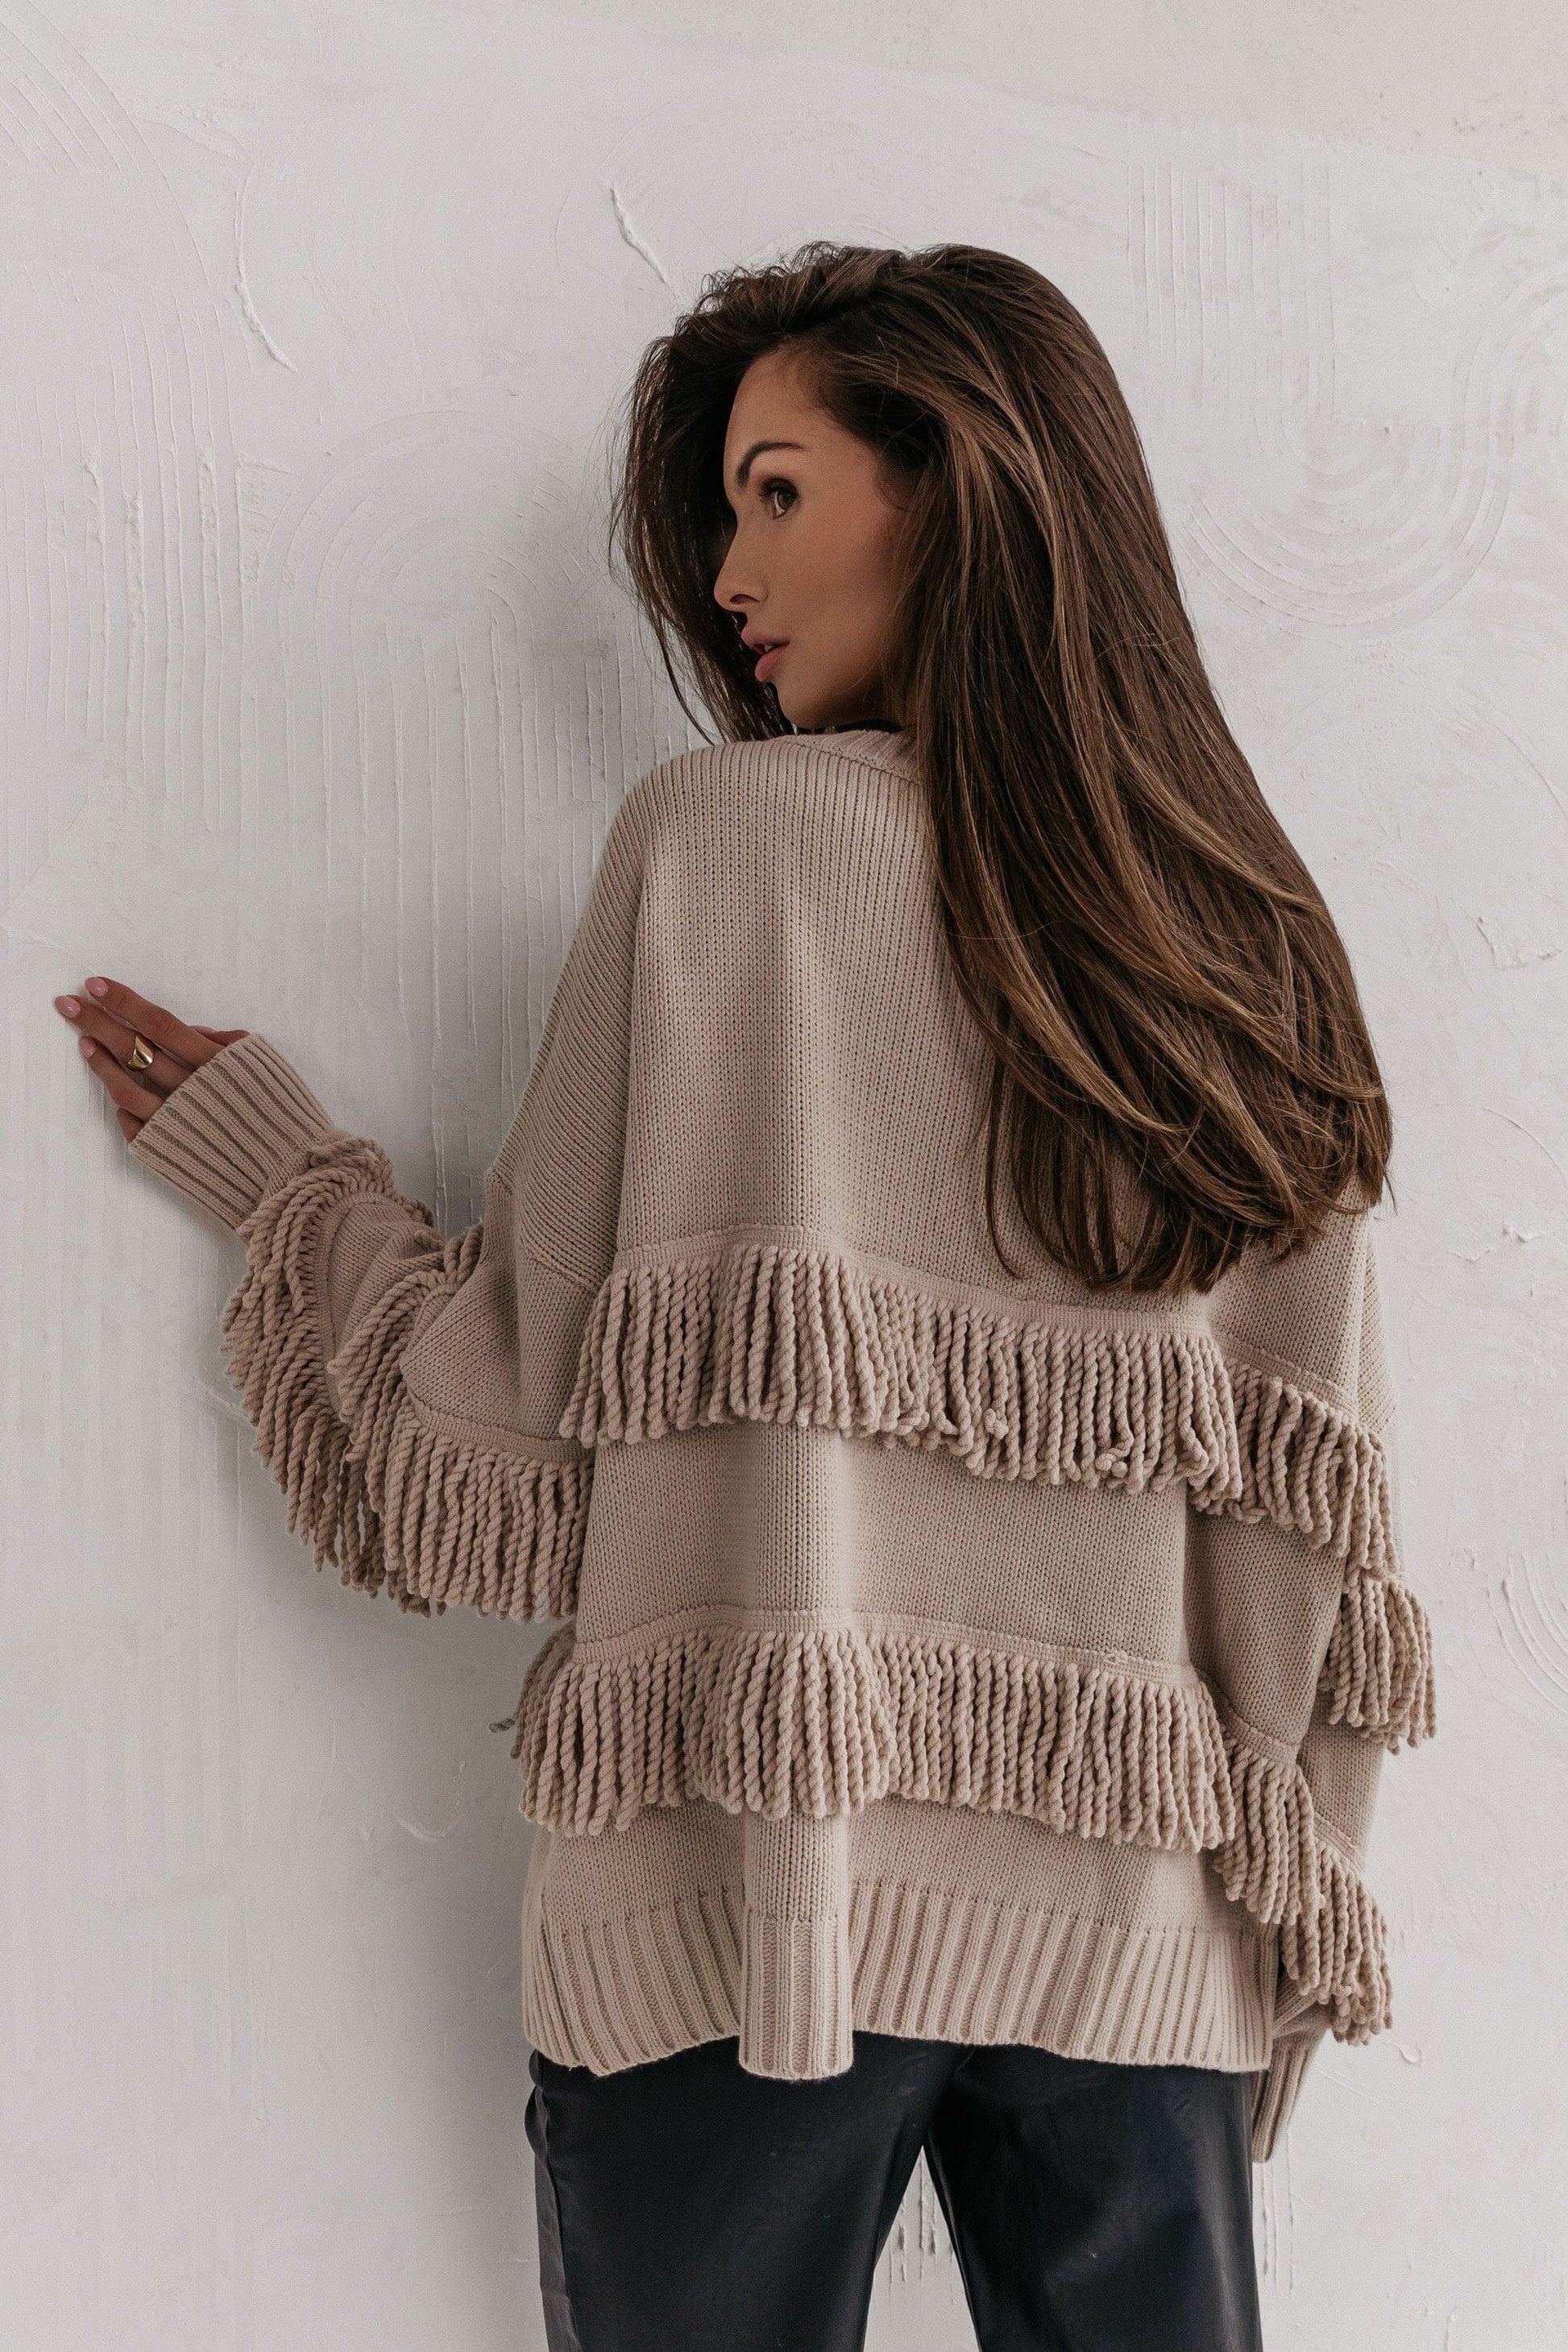 Trend Collection Pullover mit Fransen One Size / Beige